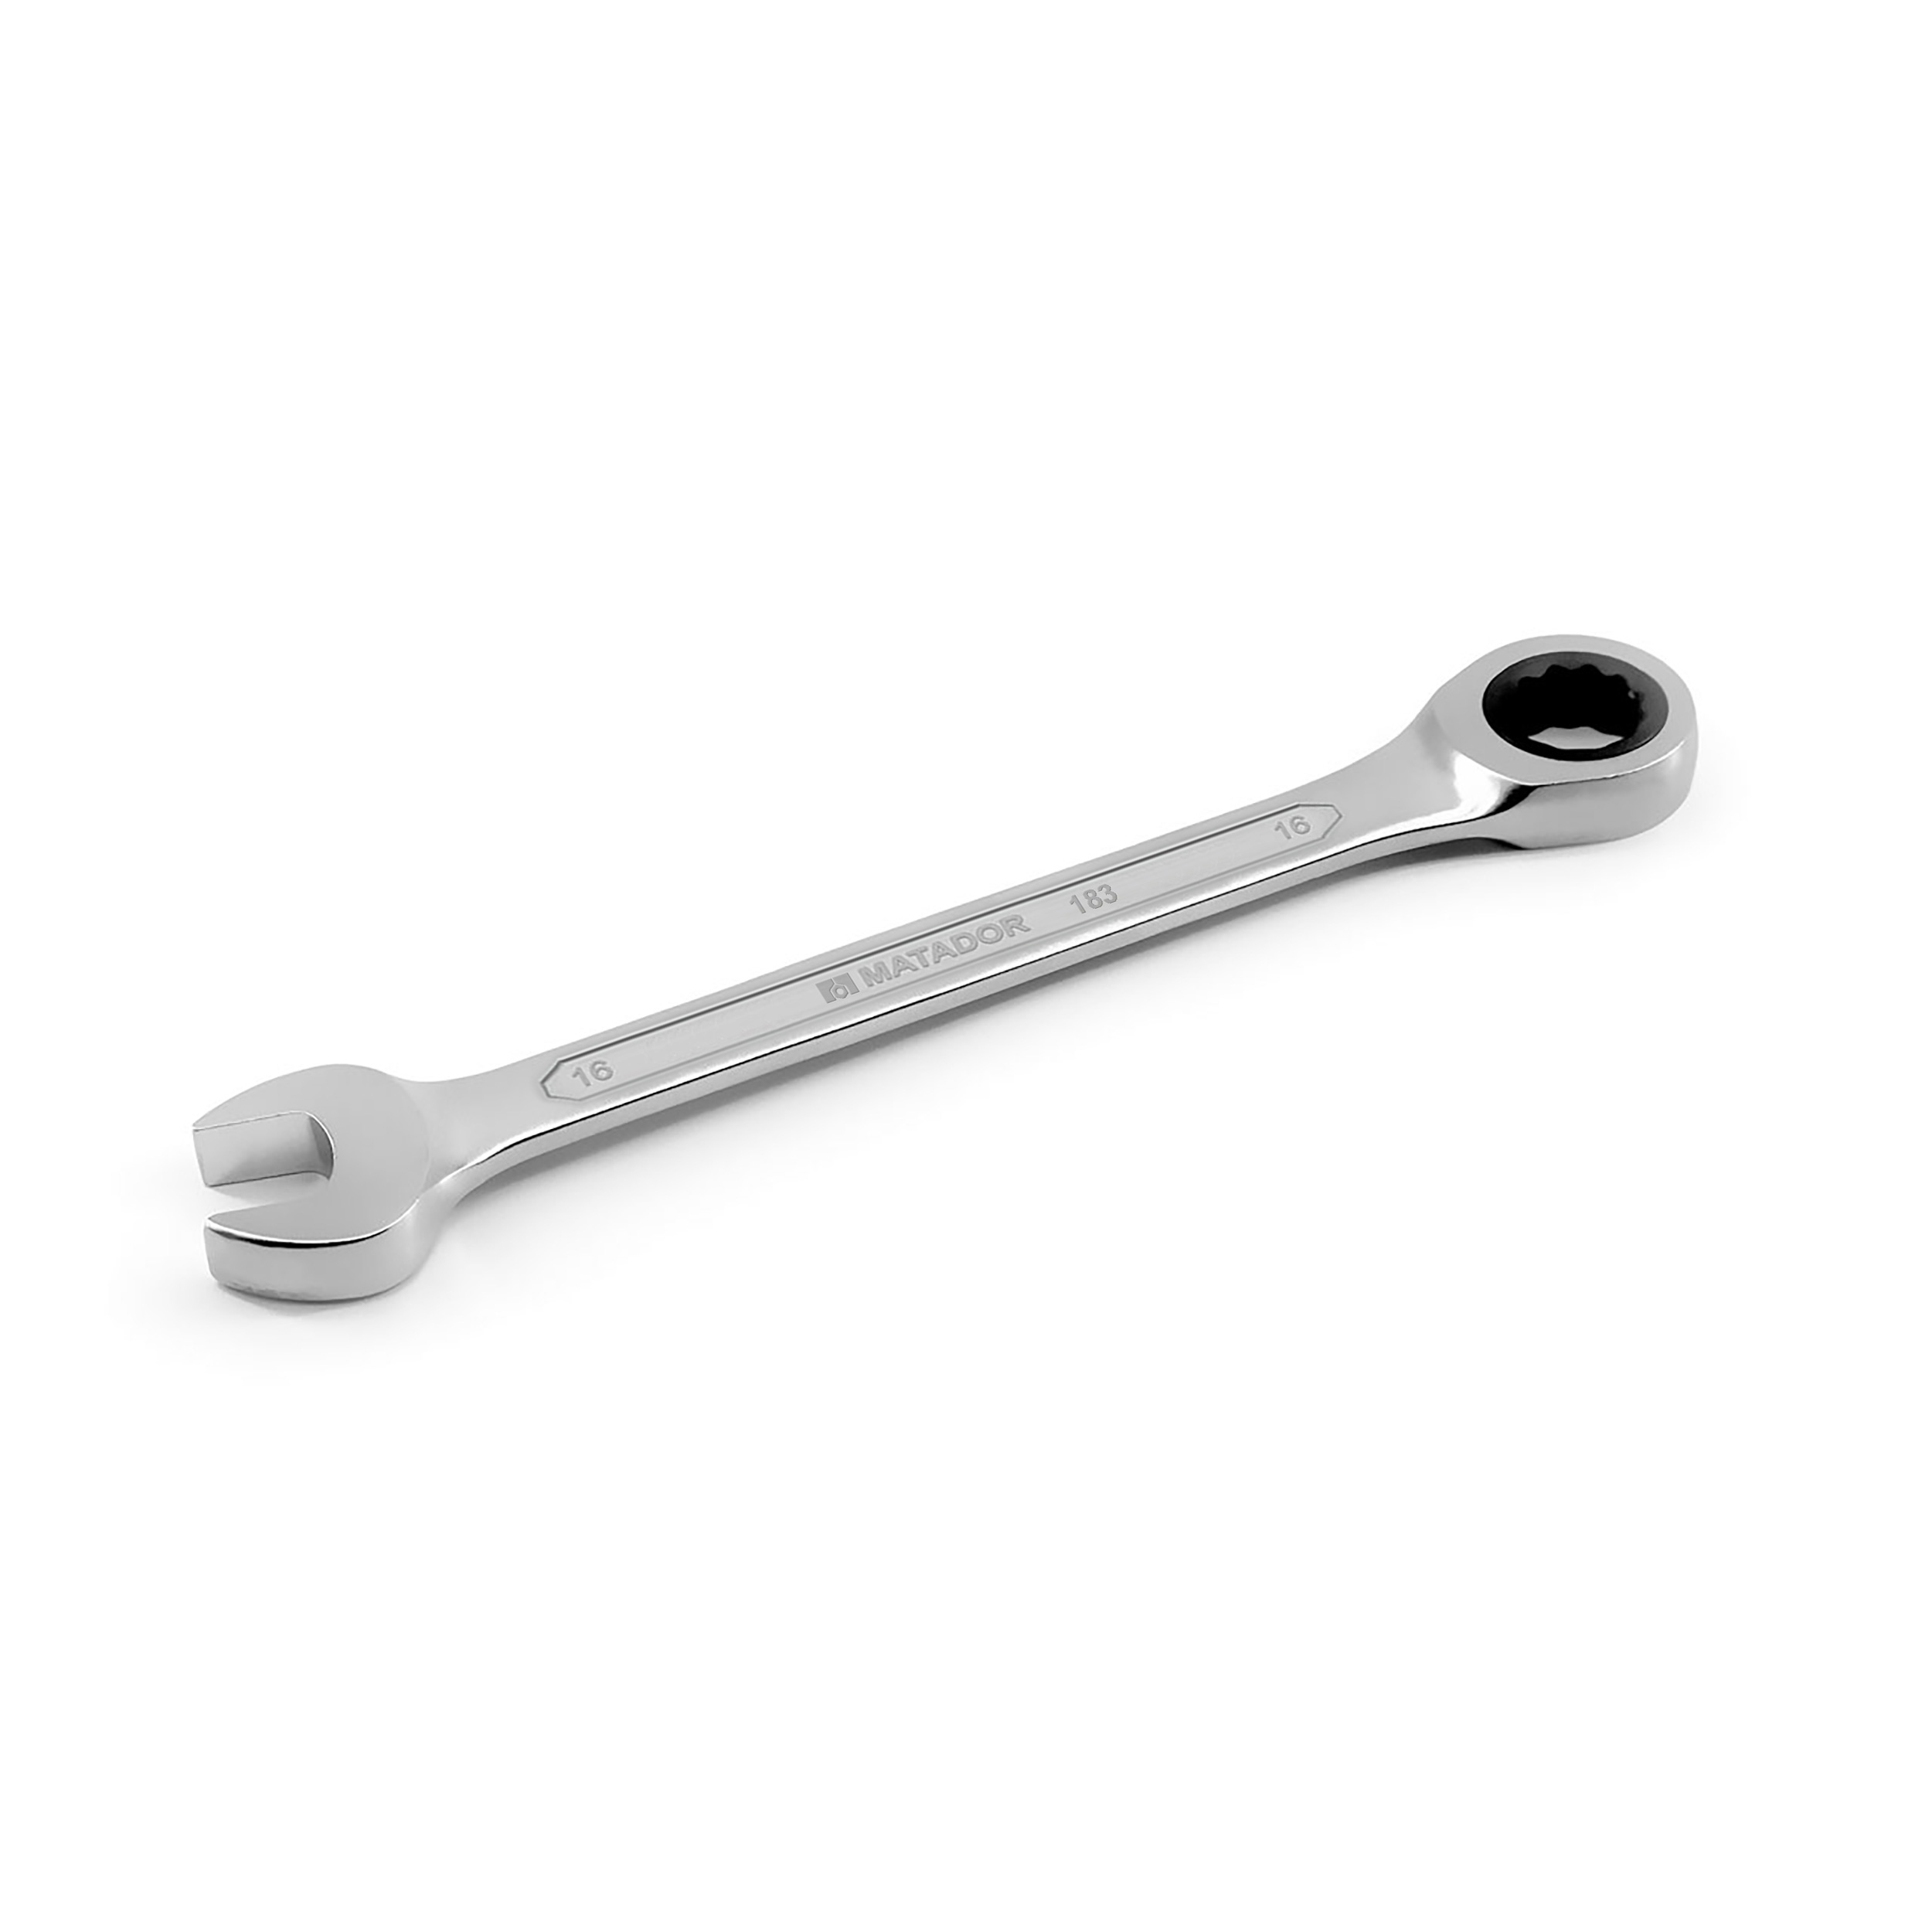 Knarren-Ringmaulschlüssel, 8 mm, 36 Nm, MATADOR Art.-Code: 01830080